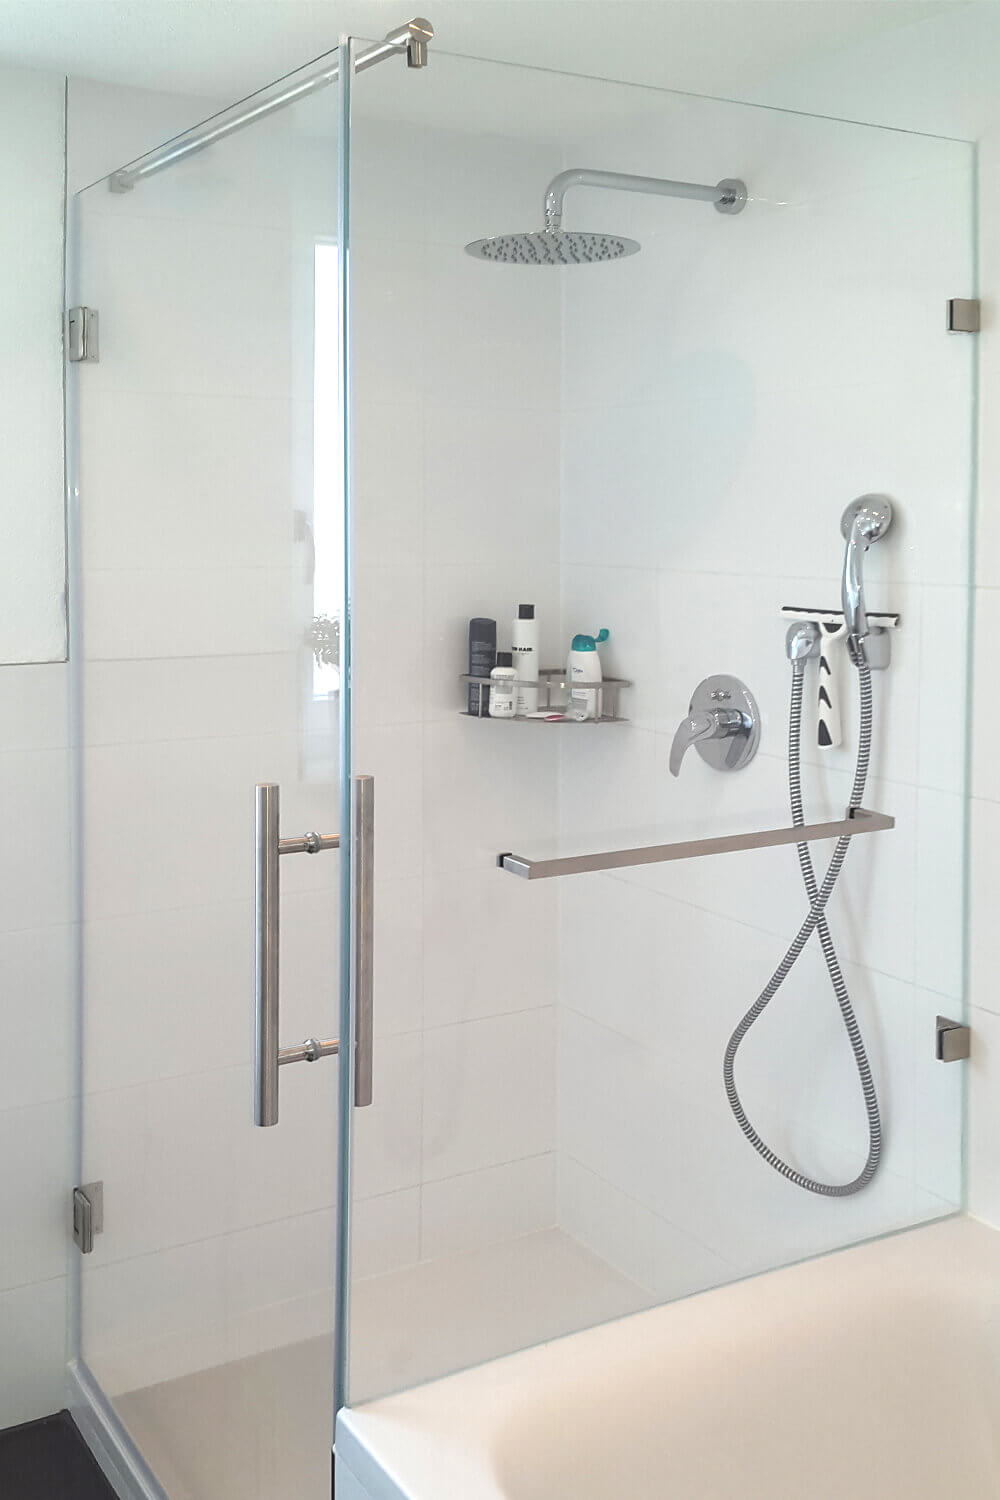 Duschkabine an Wanne mit großer Tür und Festteil inklusive Handtuchhalter